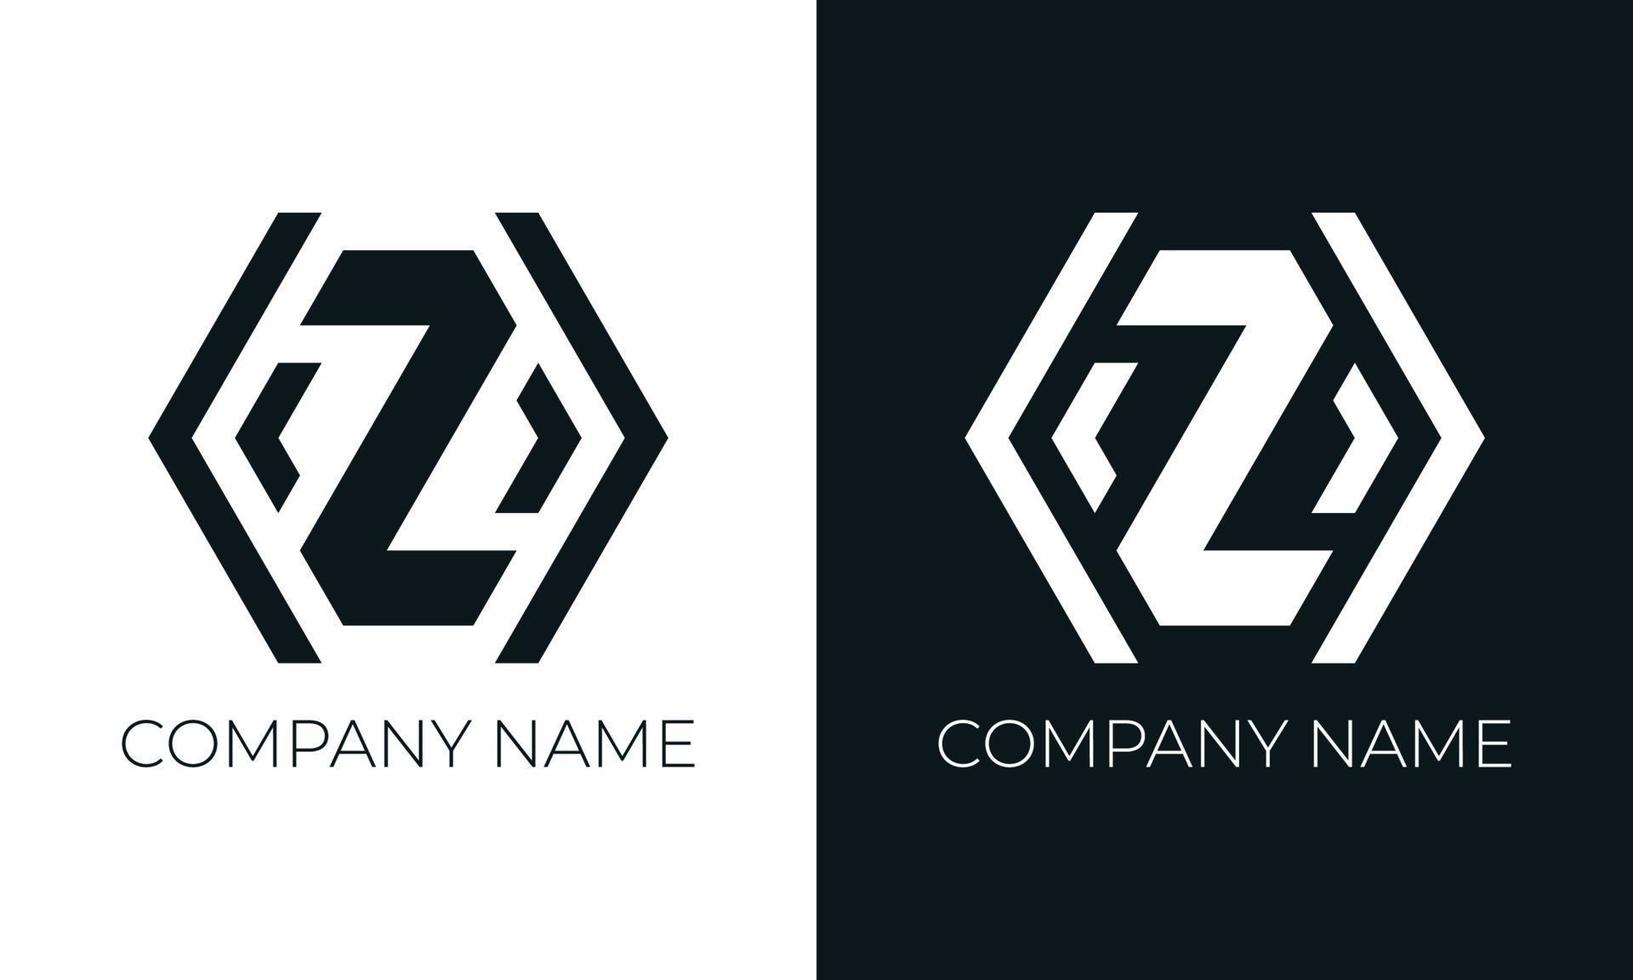 eerste brief z logo vector ontwerp sjabloon. creatief modern modieus z typografie en zwart kleuren.